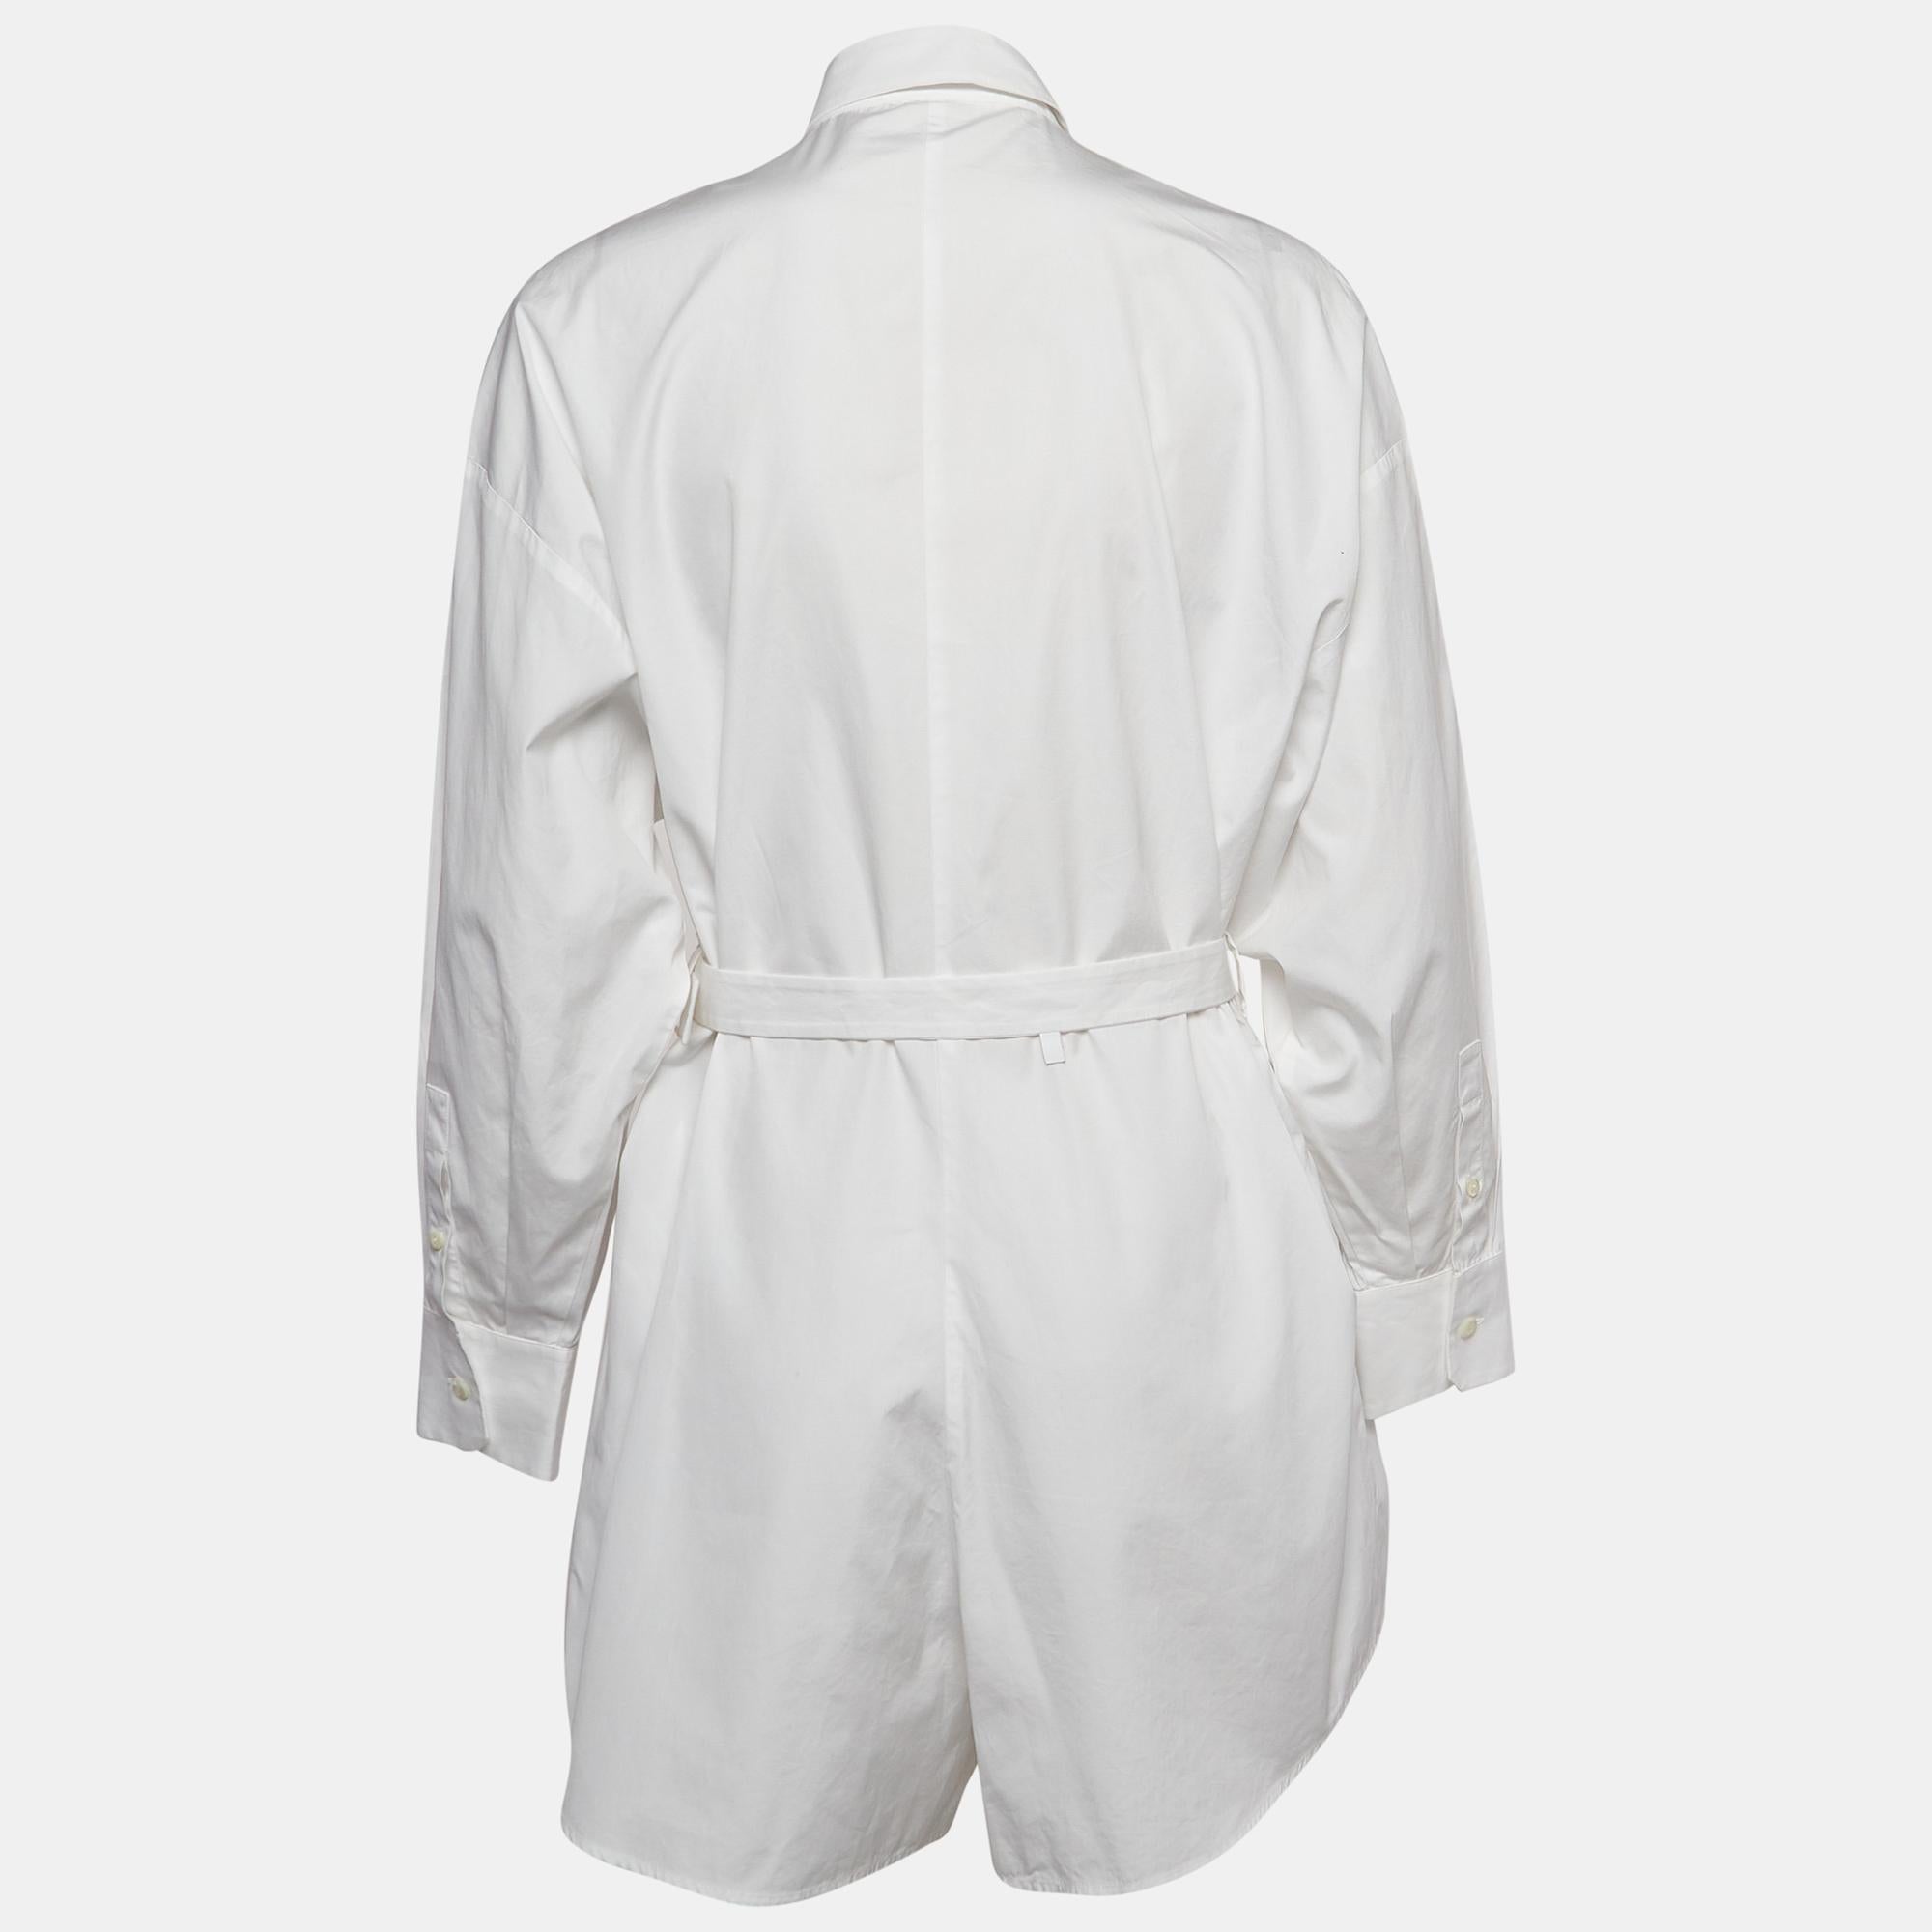 Der weiße Playsuit von Prada eignet sich für schicke Looks. Es ist aus Baumwolle im Hemdgürtel-Stil geschnitten und bietet Komfort und lässige Raffinesse. Kombinieren Sie den Anzug mit Turnschuhen und Halbschuhen bis hin zu Pantoletten und